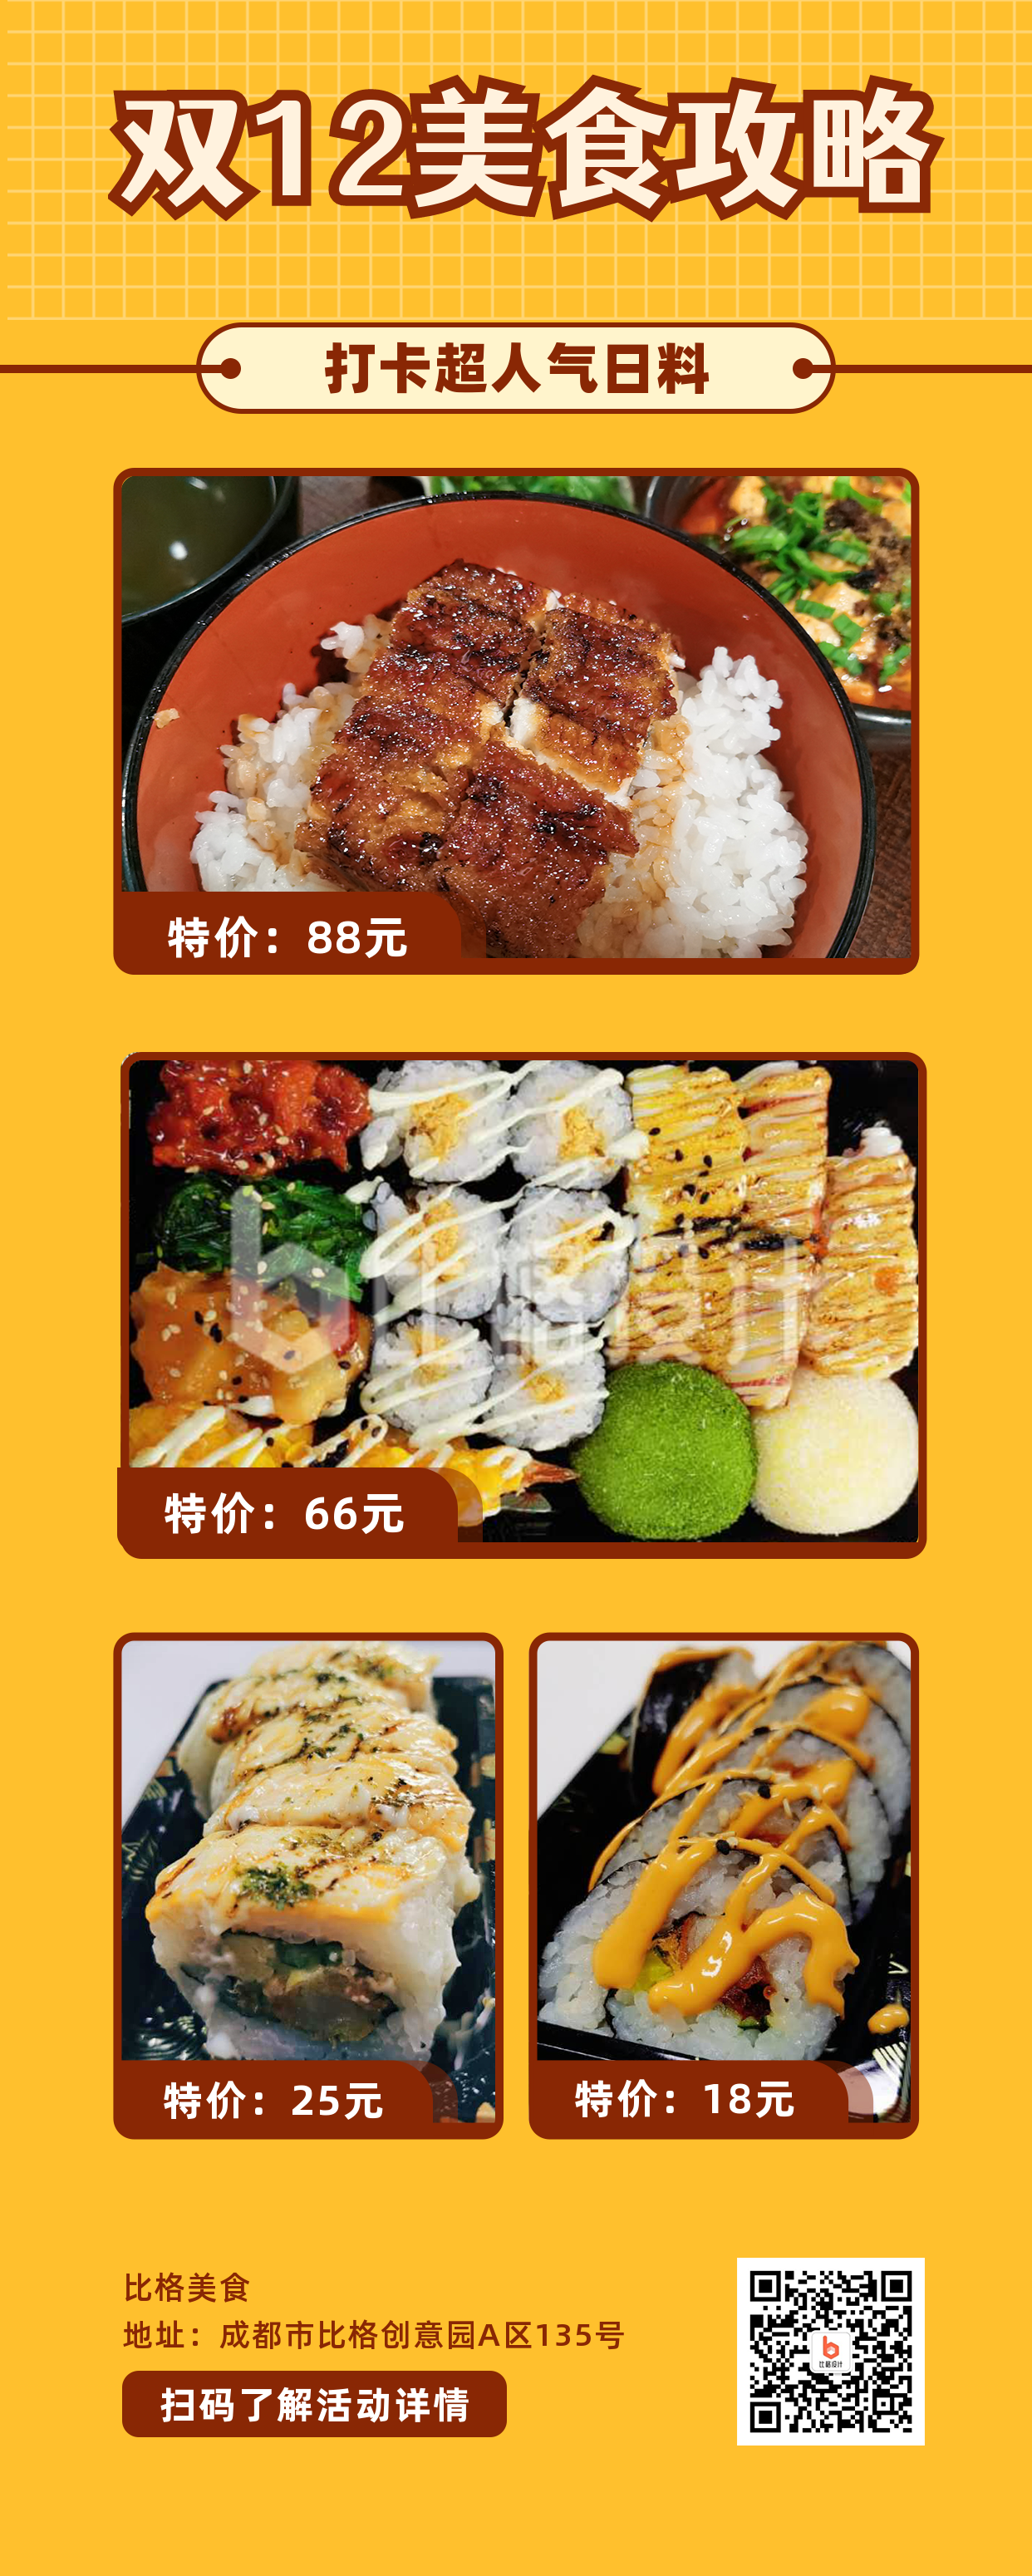 双十二美食打卡福利活动攻略日料寿司实景长图海报